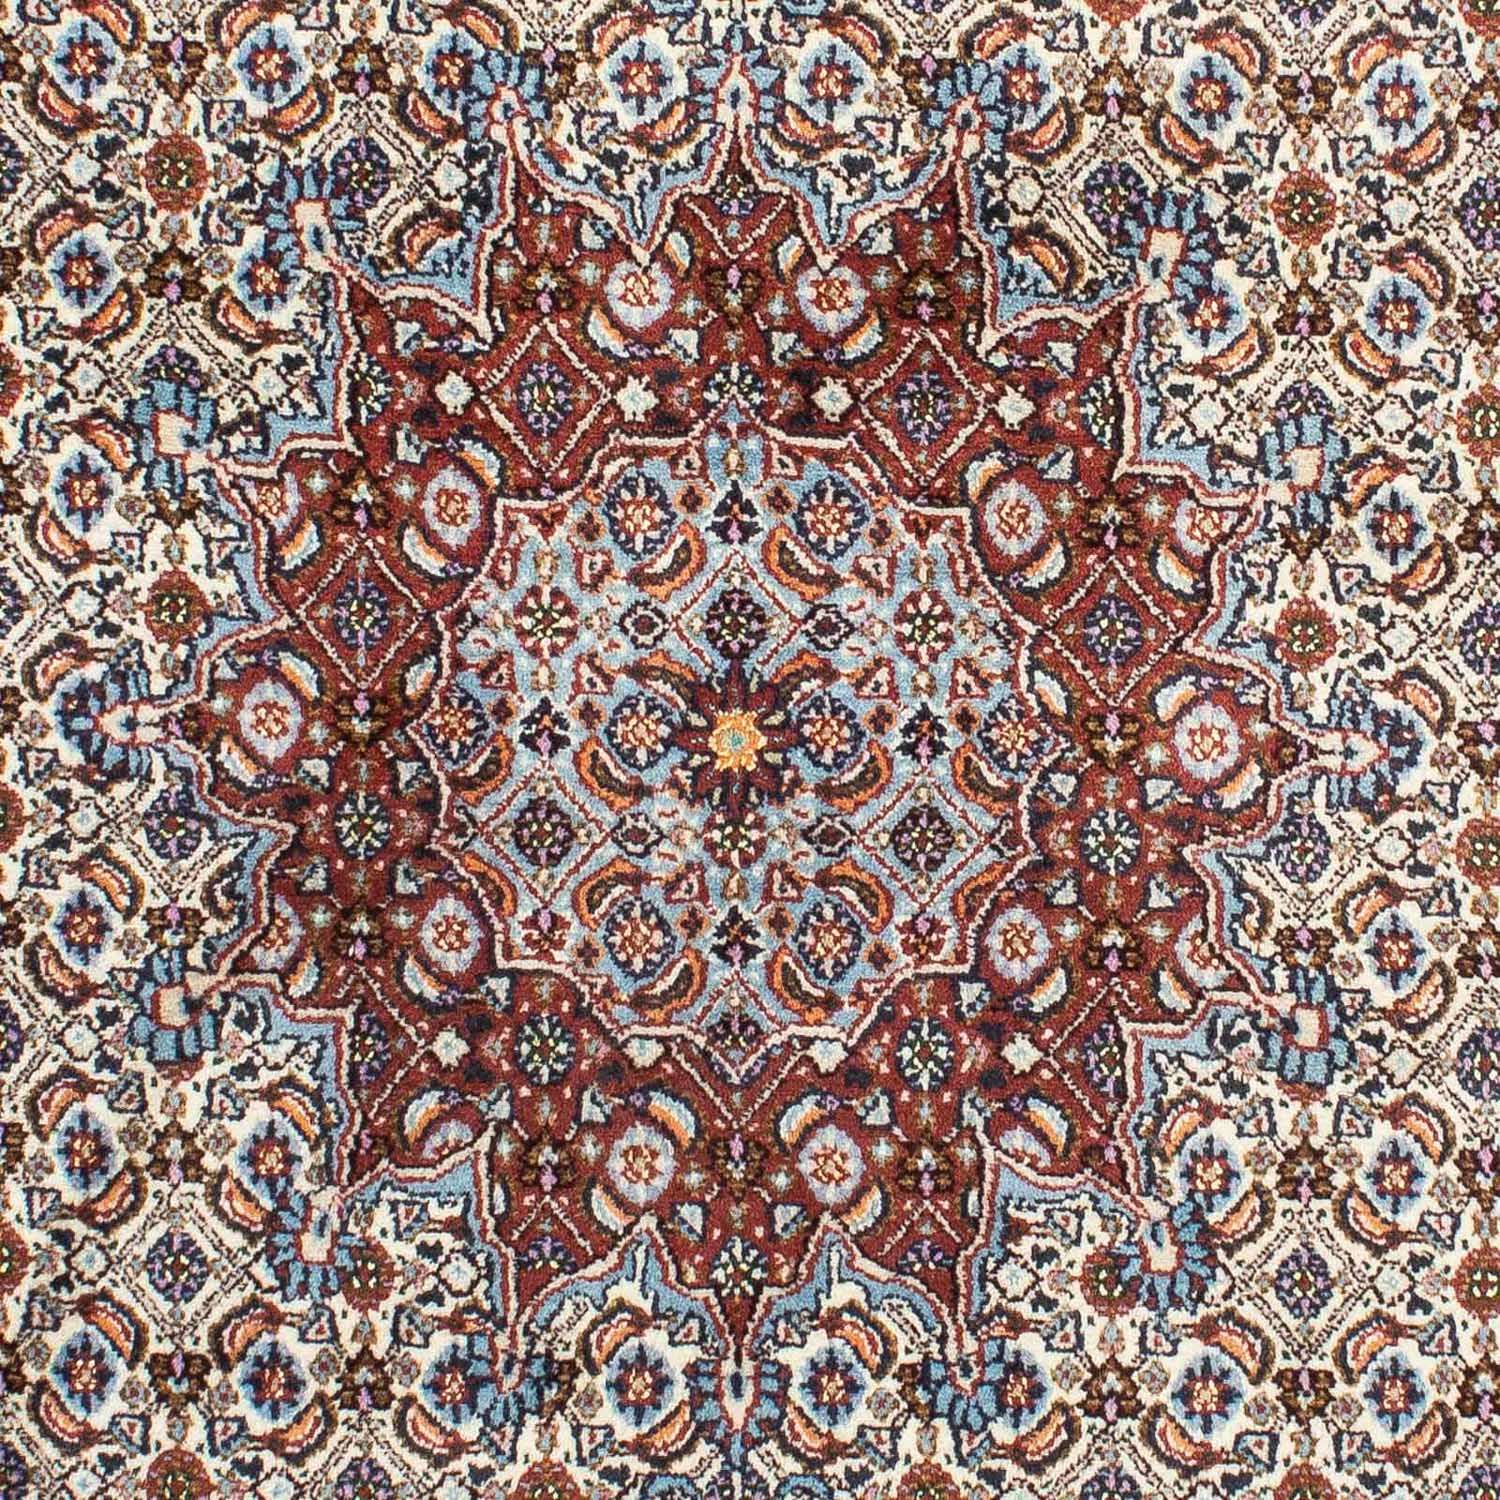 Tapis persan - Classique - 210 x 148 cm - beige